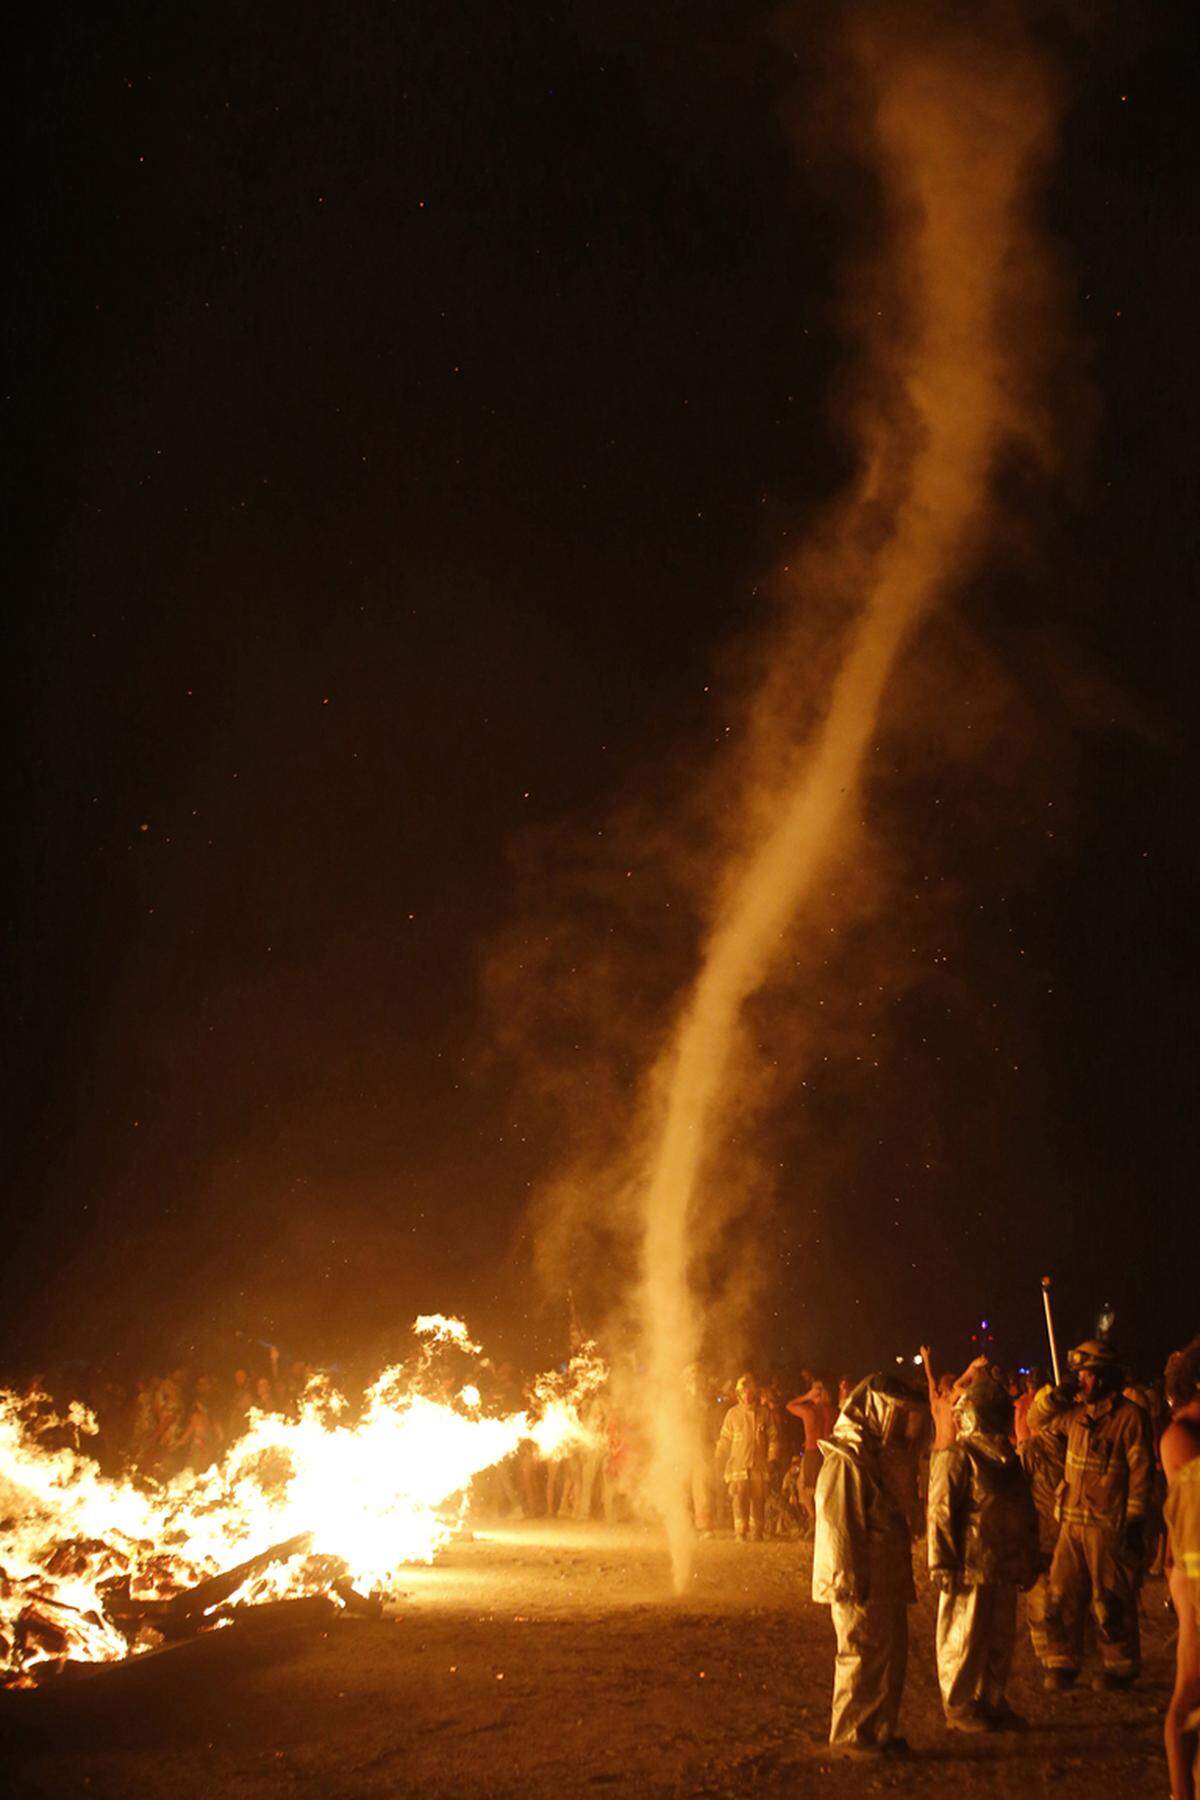 Die geschaffenen Kunstwerke werden gerne entsprechend der Tradition des Festivals verbrannt.